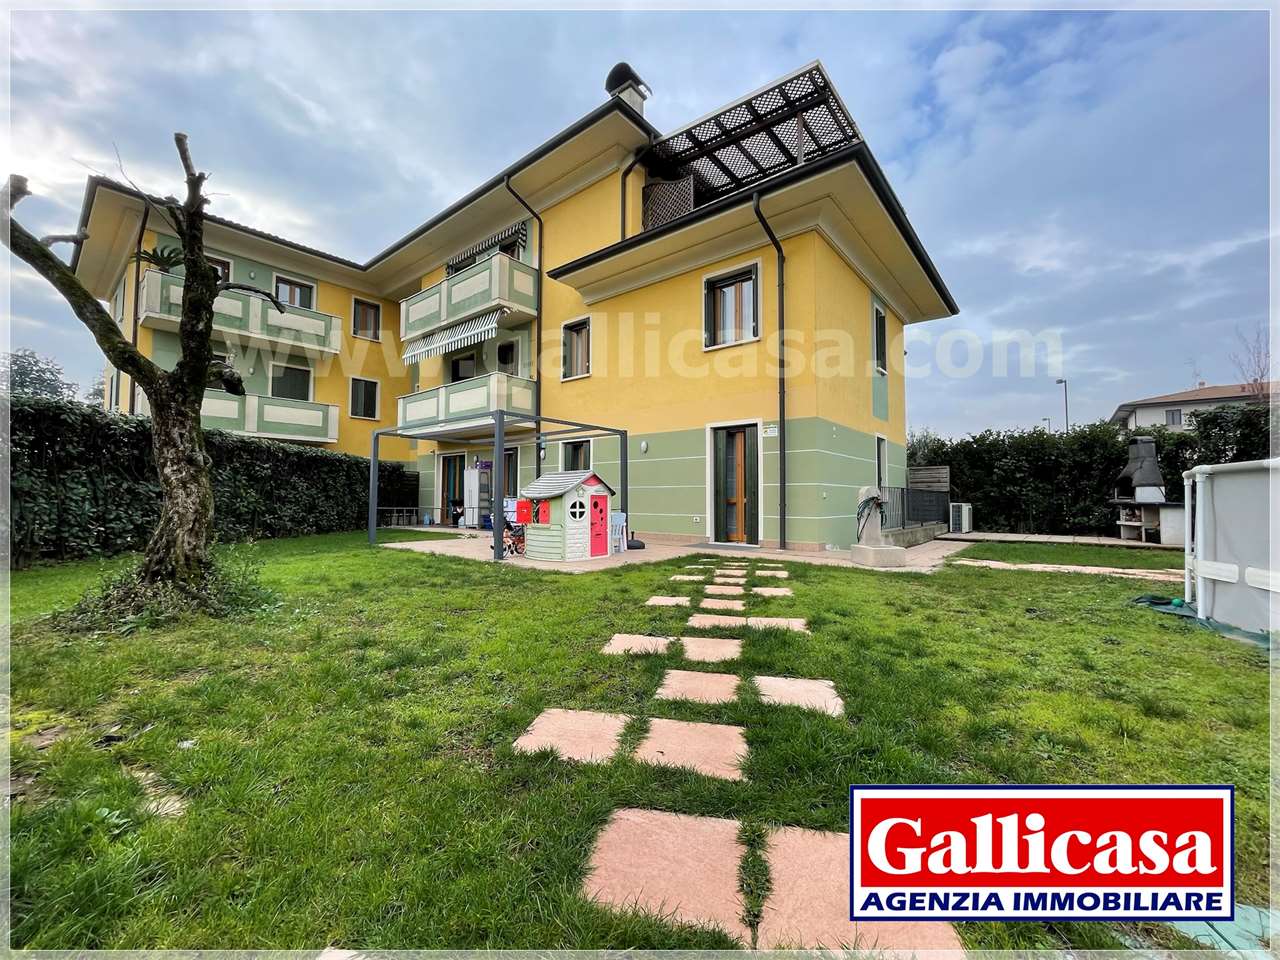 Appartamento in vendita a Chiari, 3 locali, prezzo € 249.000 | CambioCasa.it